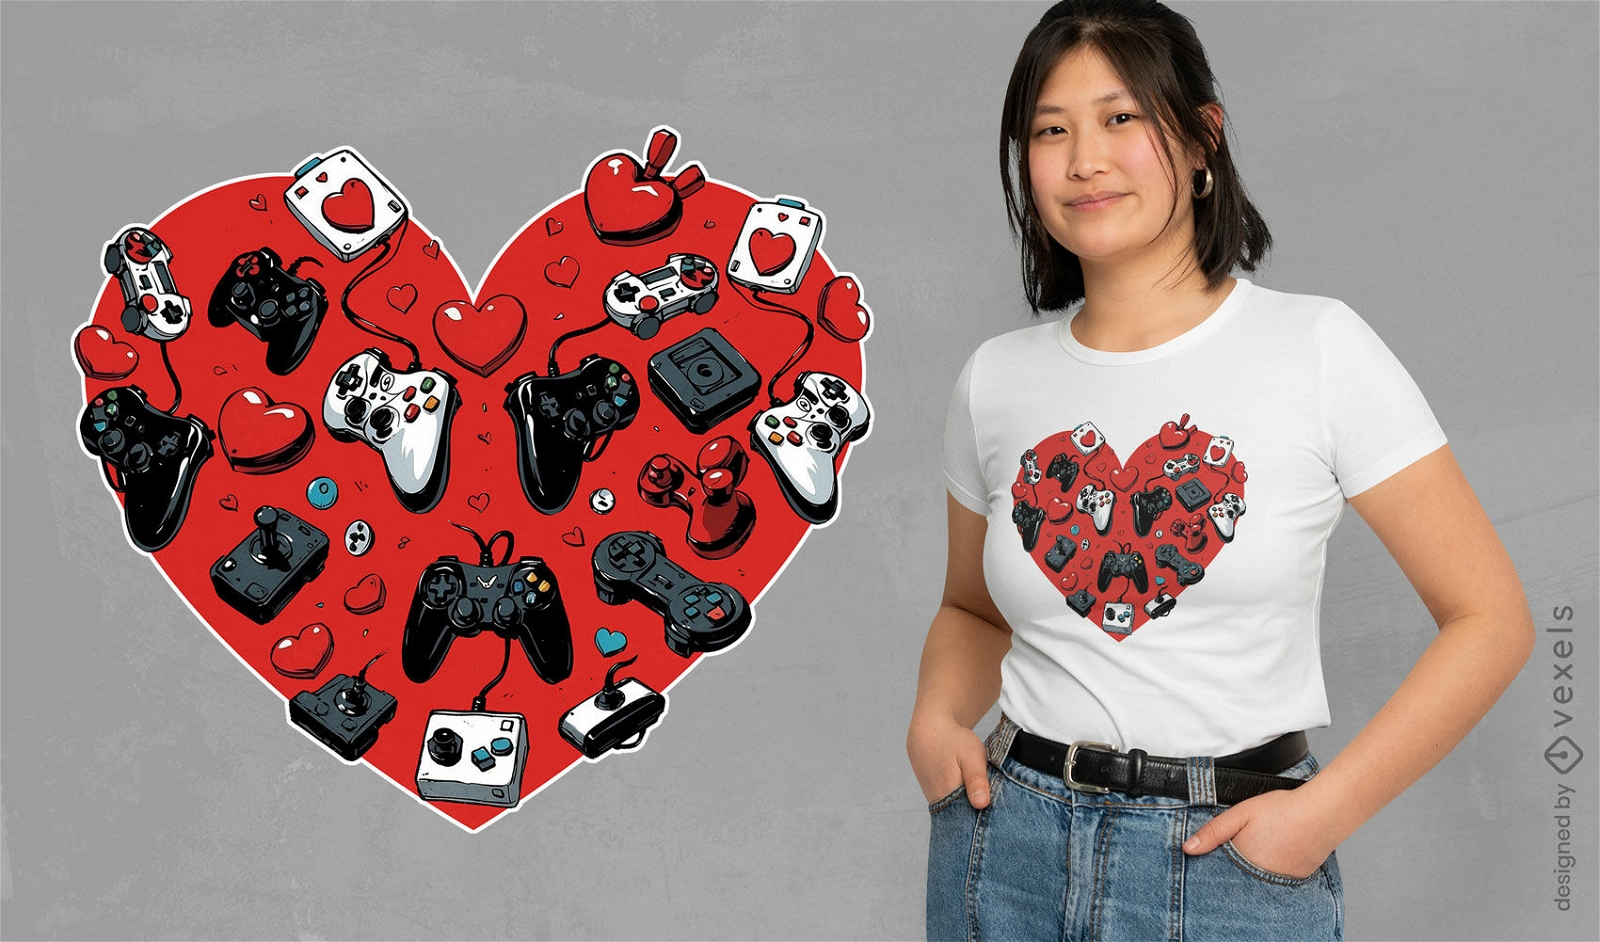 Joystick heart t-shirt design